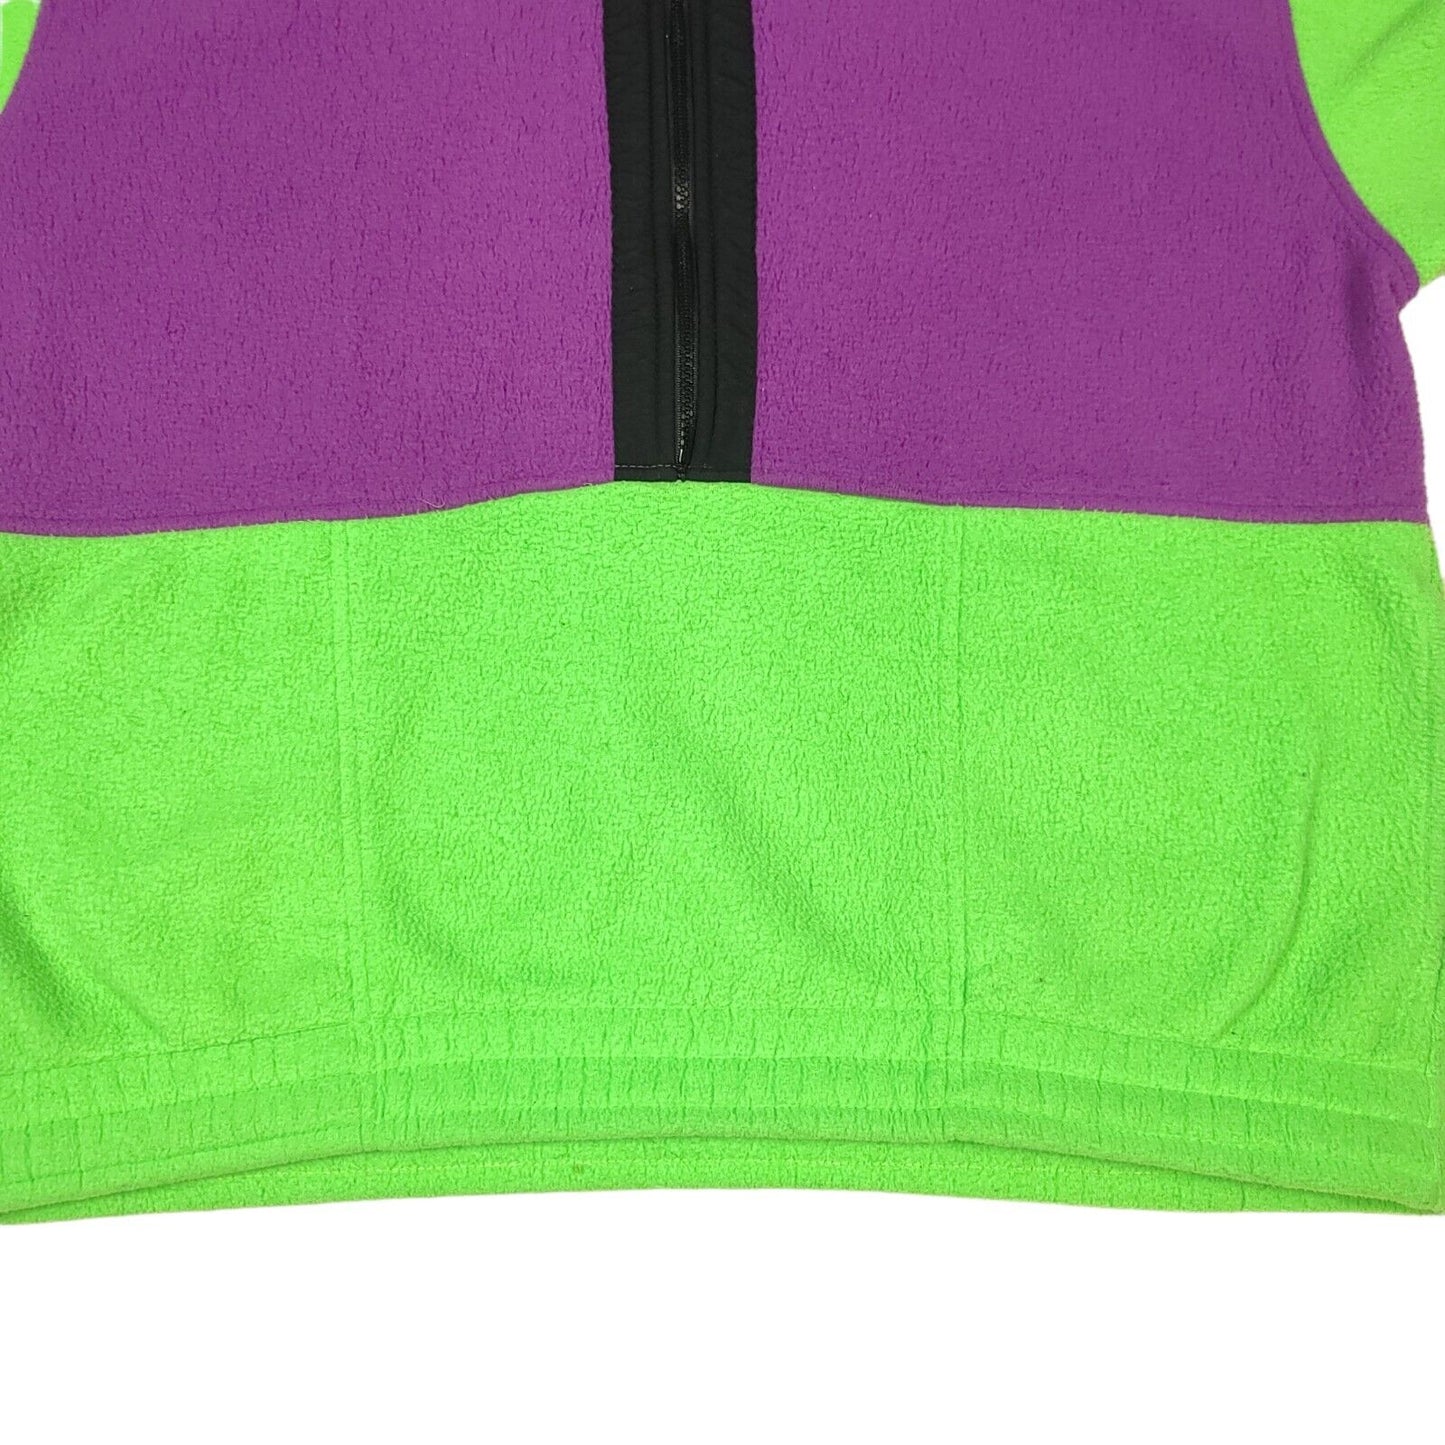 Ocean Pacific Green Purple 1/2 Zip Fleece Pullover Jacket